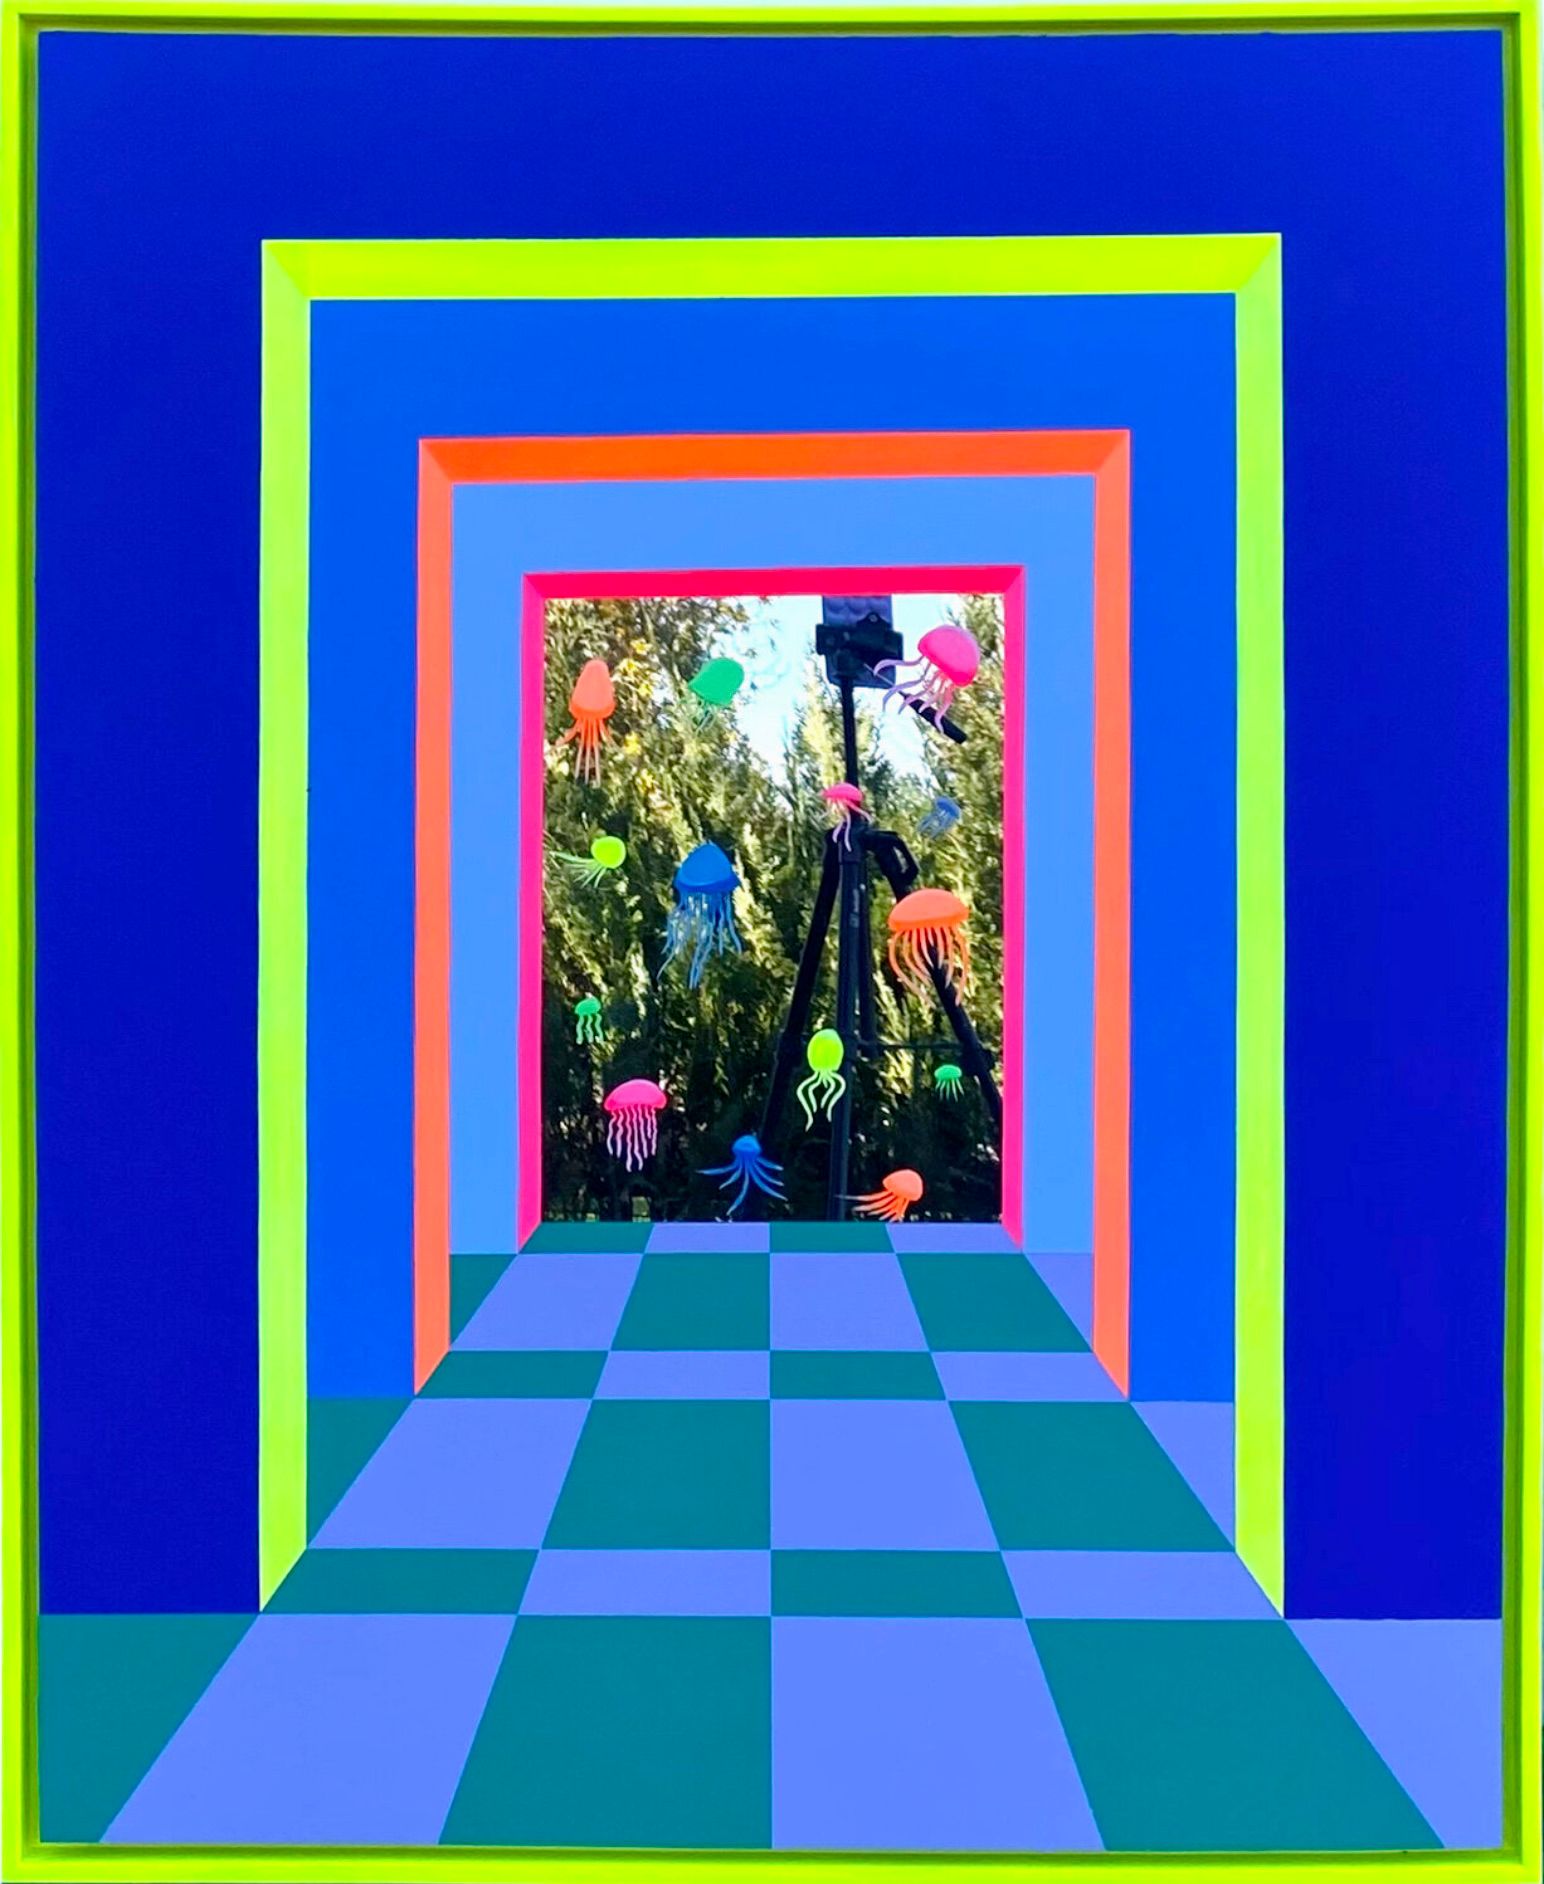 Isabelle Derecque, "L'acquario" Pittura colorata, in un luogo dai colori misteriosi, abitato da creature marine e dipinto su specchi plexi in stile pop-up con colori allegri ed energici. Visualizzato attraverso geometrie, prospettive, contrasti e riflessi.